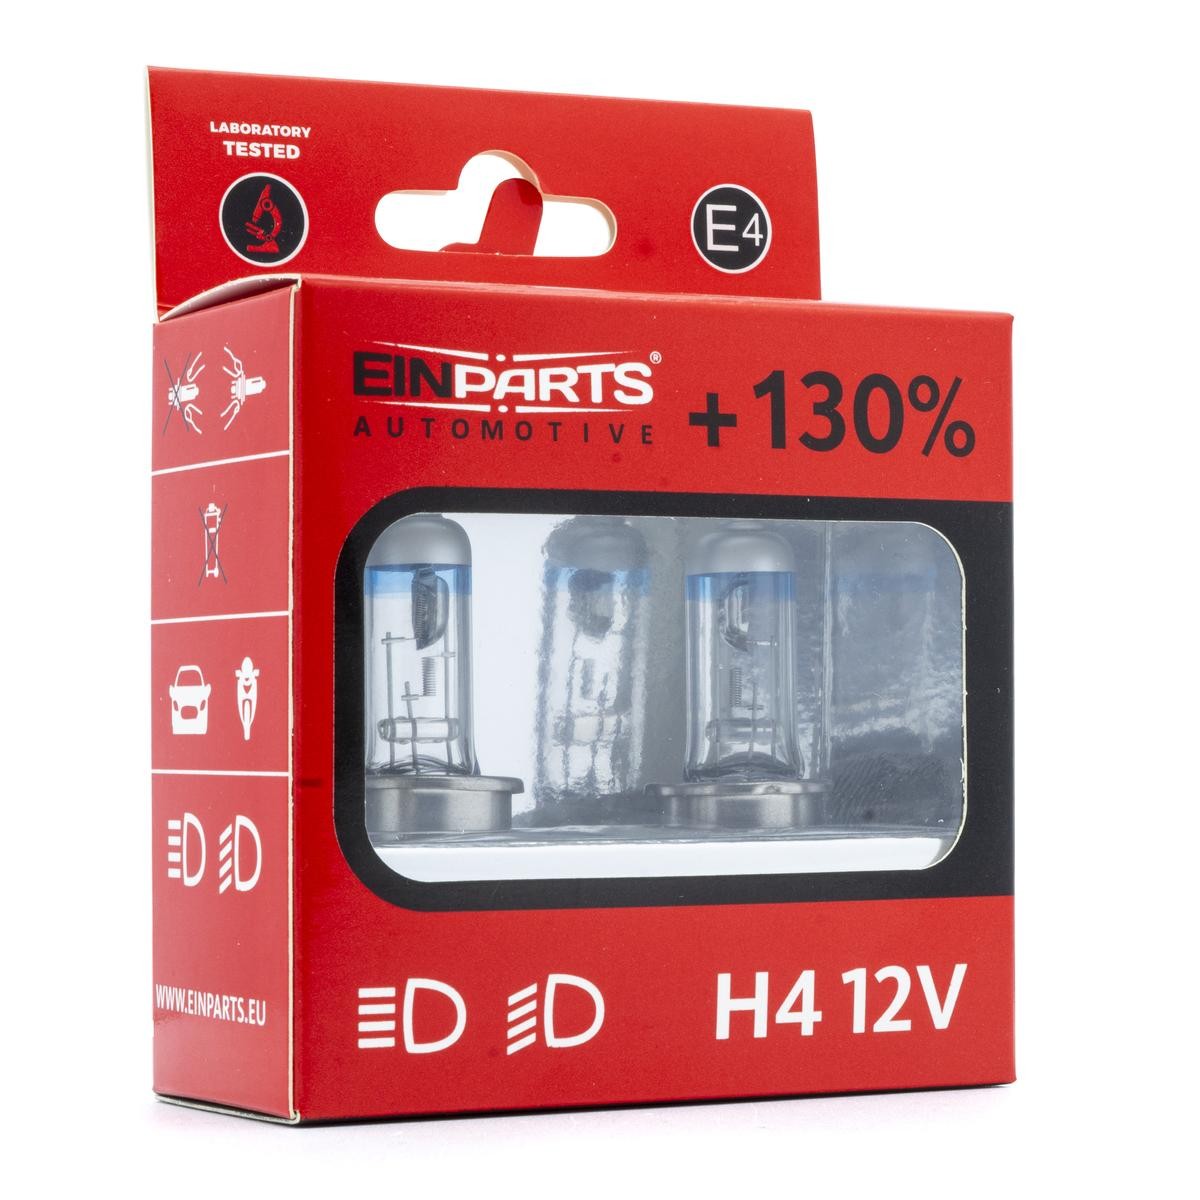 EPB46K EINPARTS Fog lamp bulb BMW H4 12V 60/55W P43t, 5000K, Halogen